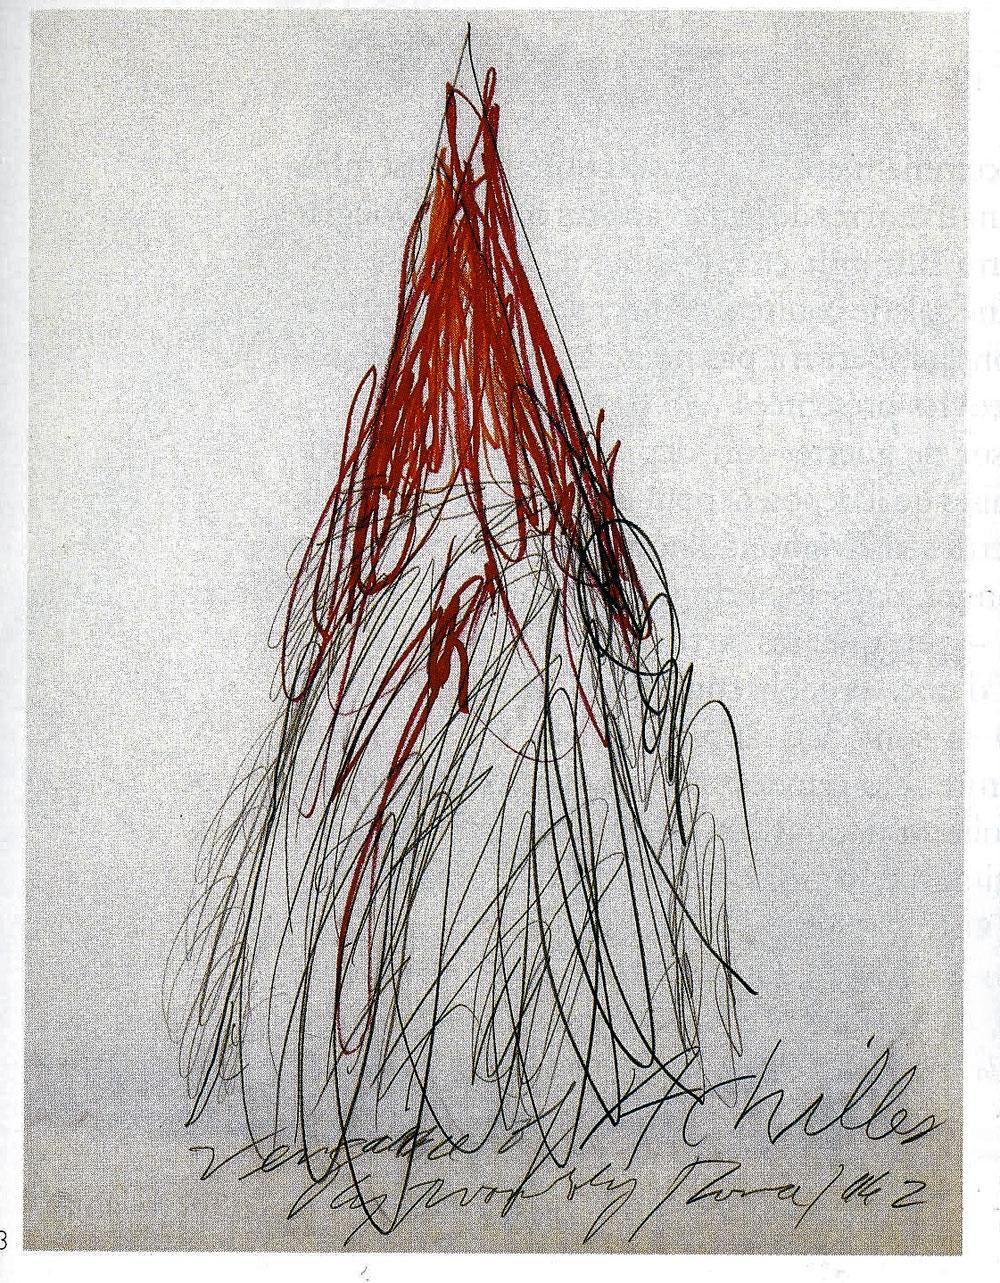 Achille pleurant la mort de Patrocle, Cy Twombly, 1962 (259 cm × 302 cm).